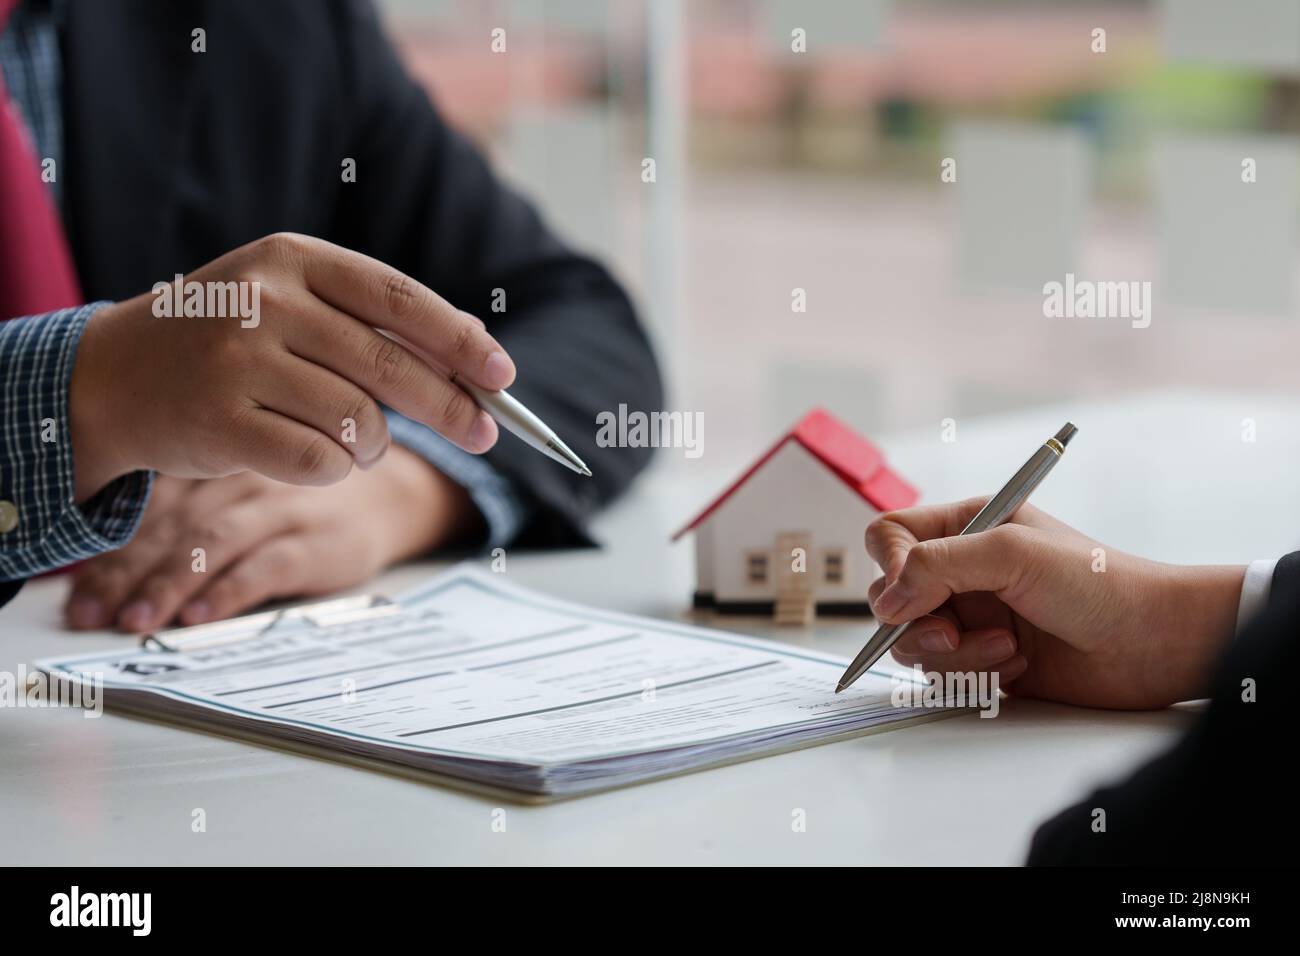 Nahaufnahme des Geschäftsmanns, der auf den Kauf eines Hauses hinweist und eine Vereinbarung unterzeichnet. Konzept des Bankleiters. Stockfoto